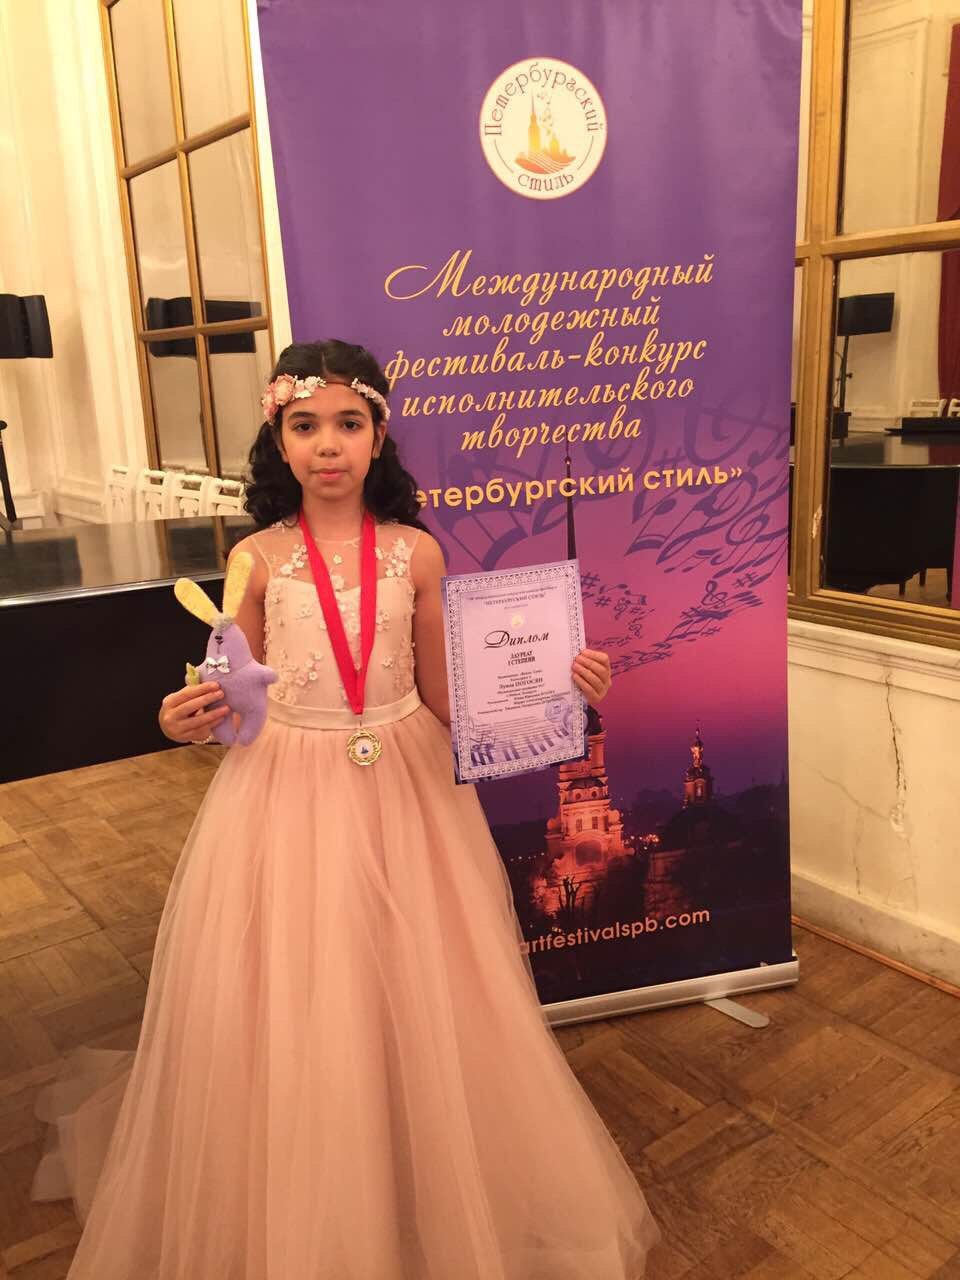 І ось, зовсім недавно 12-річна Луїза Погосян (так звуть юну співачку) повернулася до Мінська з чергового міжнародного конкурсу - «Music Land», що проходив в Північній Пальмірі з 9 по 12 травня, де, незважаючи на те, що була наймолодшою учасницею з 10 осіб у своїй віковій категорії (12-14 років), зайняла почесне 3-е місце